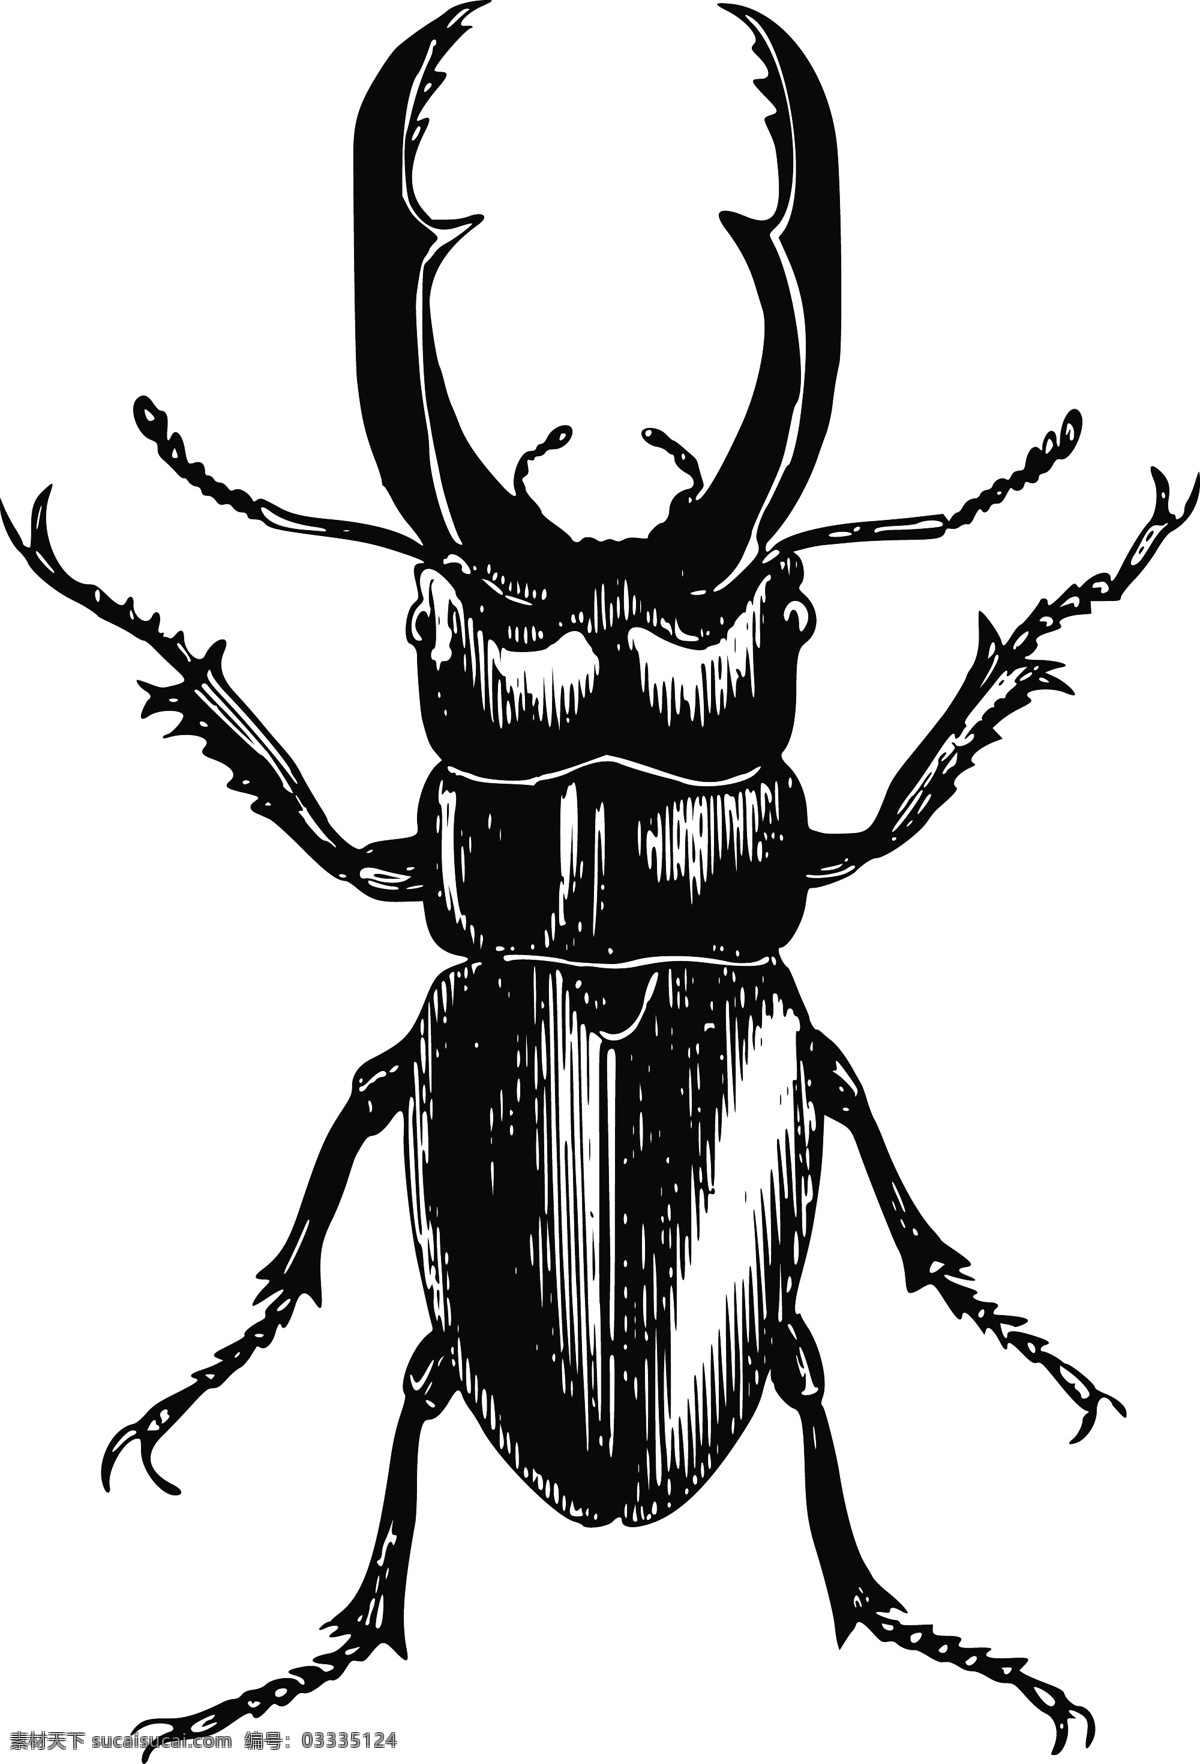 昆虫模型 模型 甲虫剪影 虫子 牛角仙 蝴蝶 生物世界 昆虫